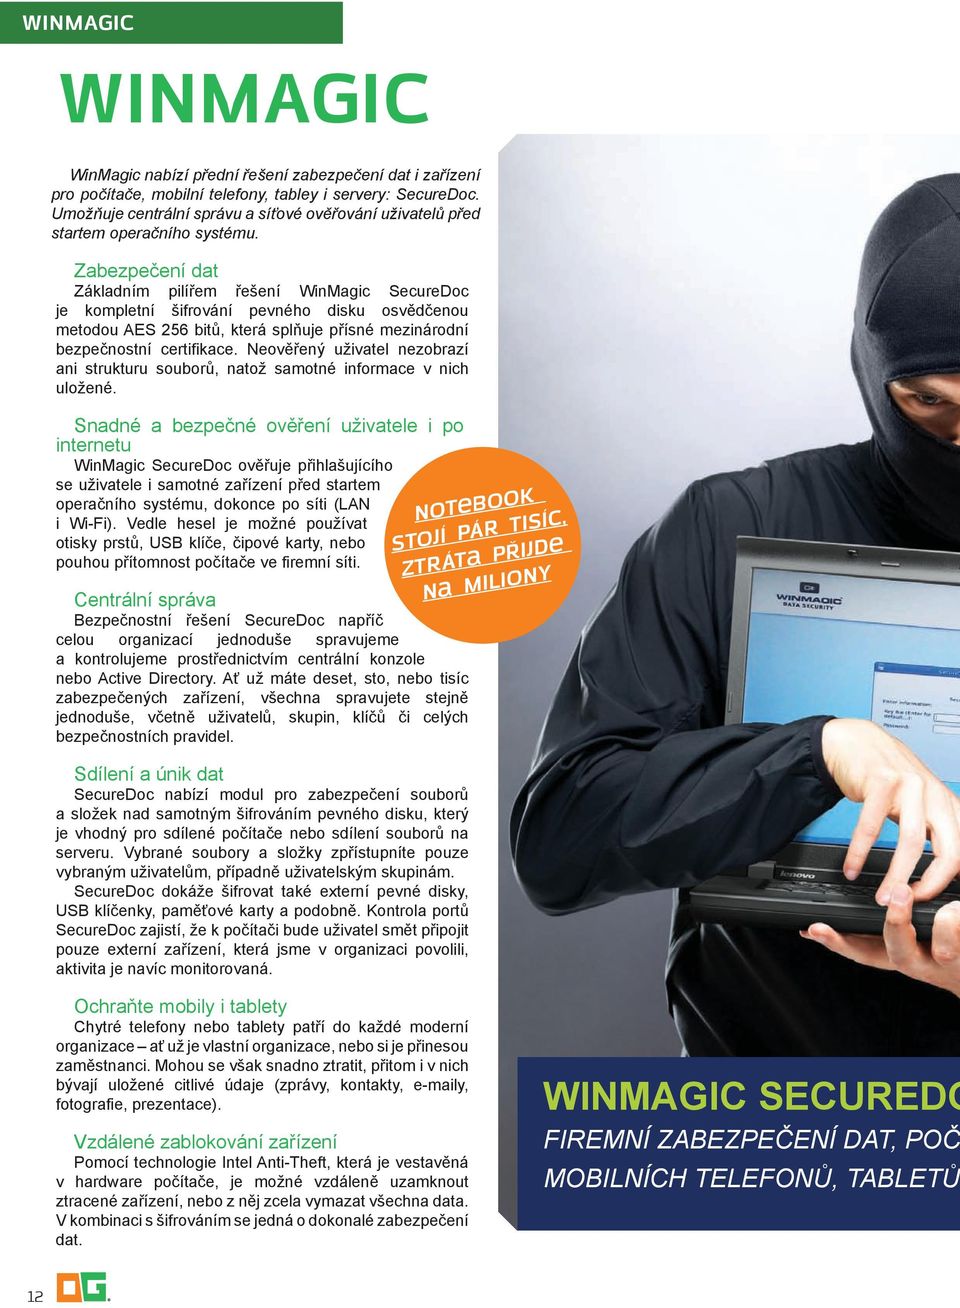 Zabezpečení dat Základním pilířem řešení WinMagic SecureDoc je kompletní šifrování pevného disku osvědčenou metodou AES 256 bitů, která splňuje přísné mezinárodní bezpečnostní certifikace.